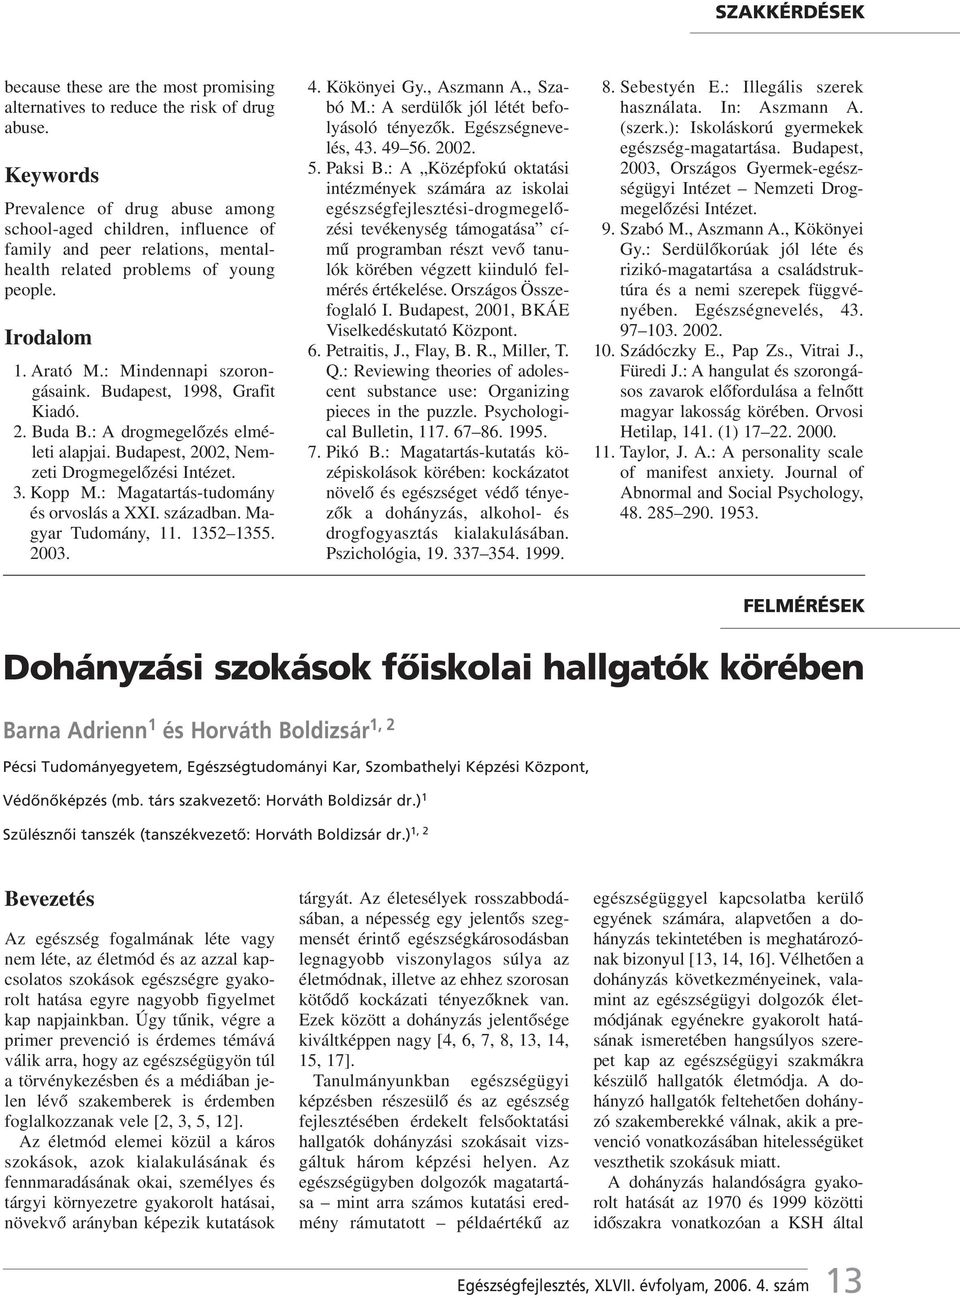 Budapest, 1998, Grafit Kiadó. 2. Buda B.: A drogmegelôzés elméleti alapjai. Budapest, 2002, Nemzeti Drogmegelôzési Intézet. 3. Kopp M.: Magatartás-tudomány és orvoslás a XXI. században.